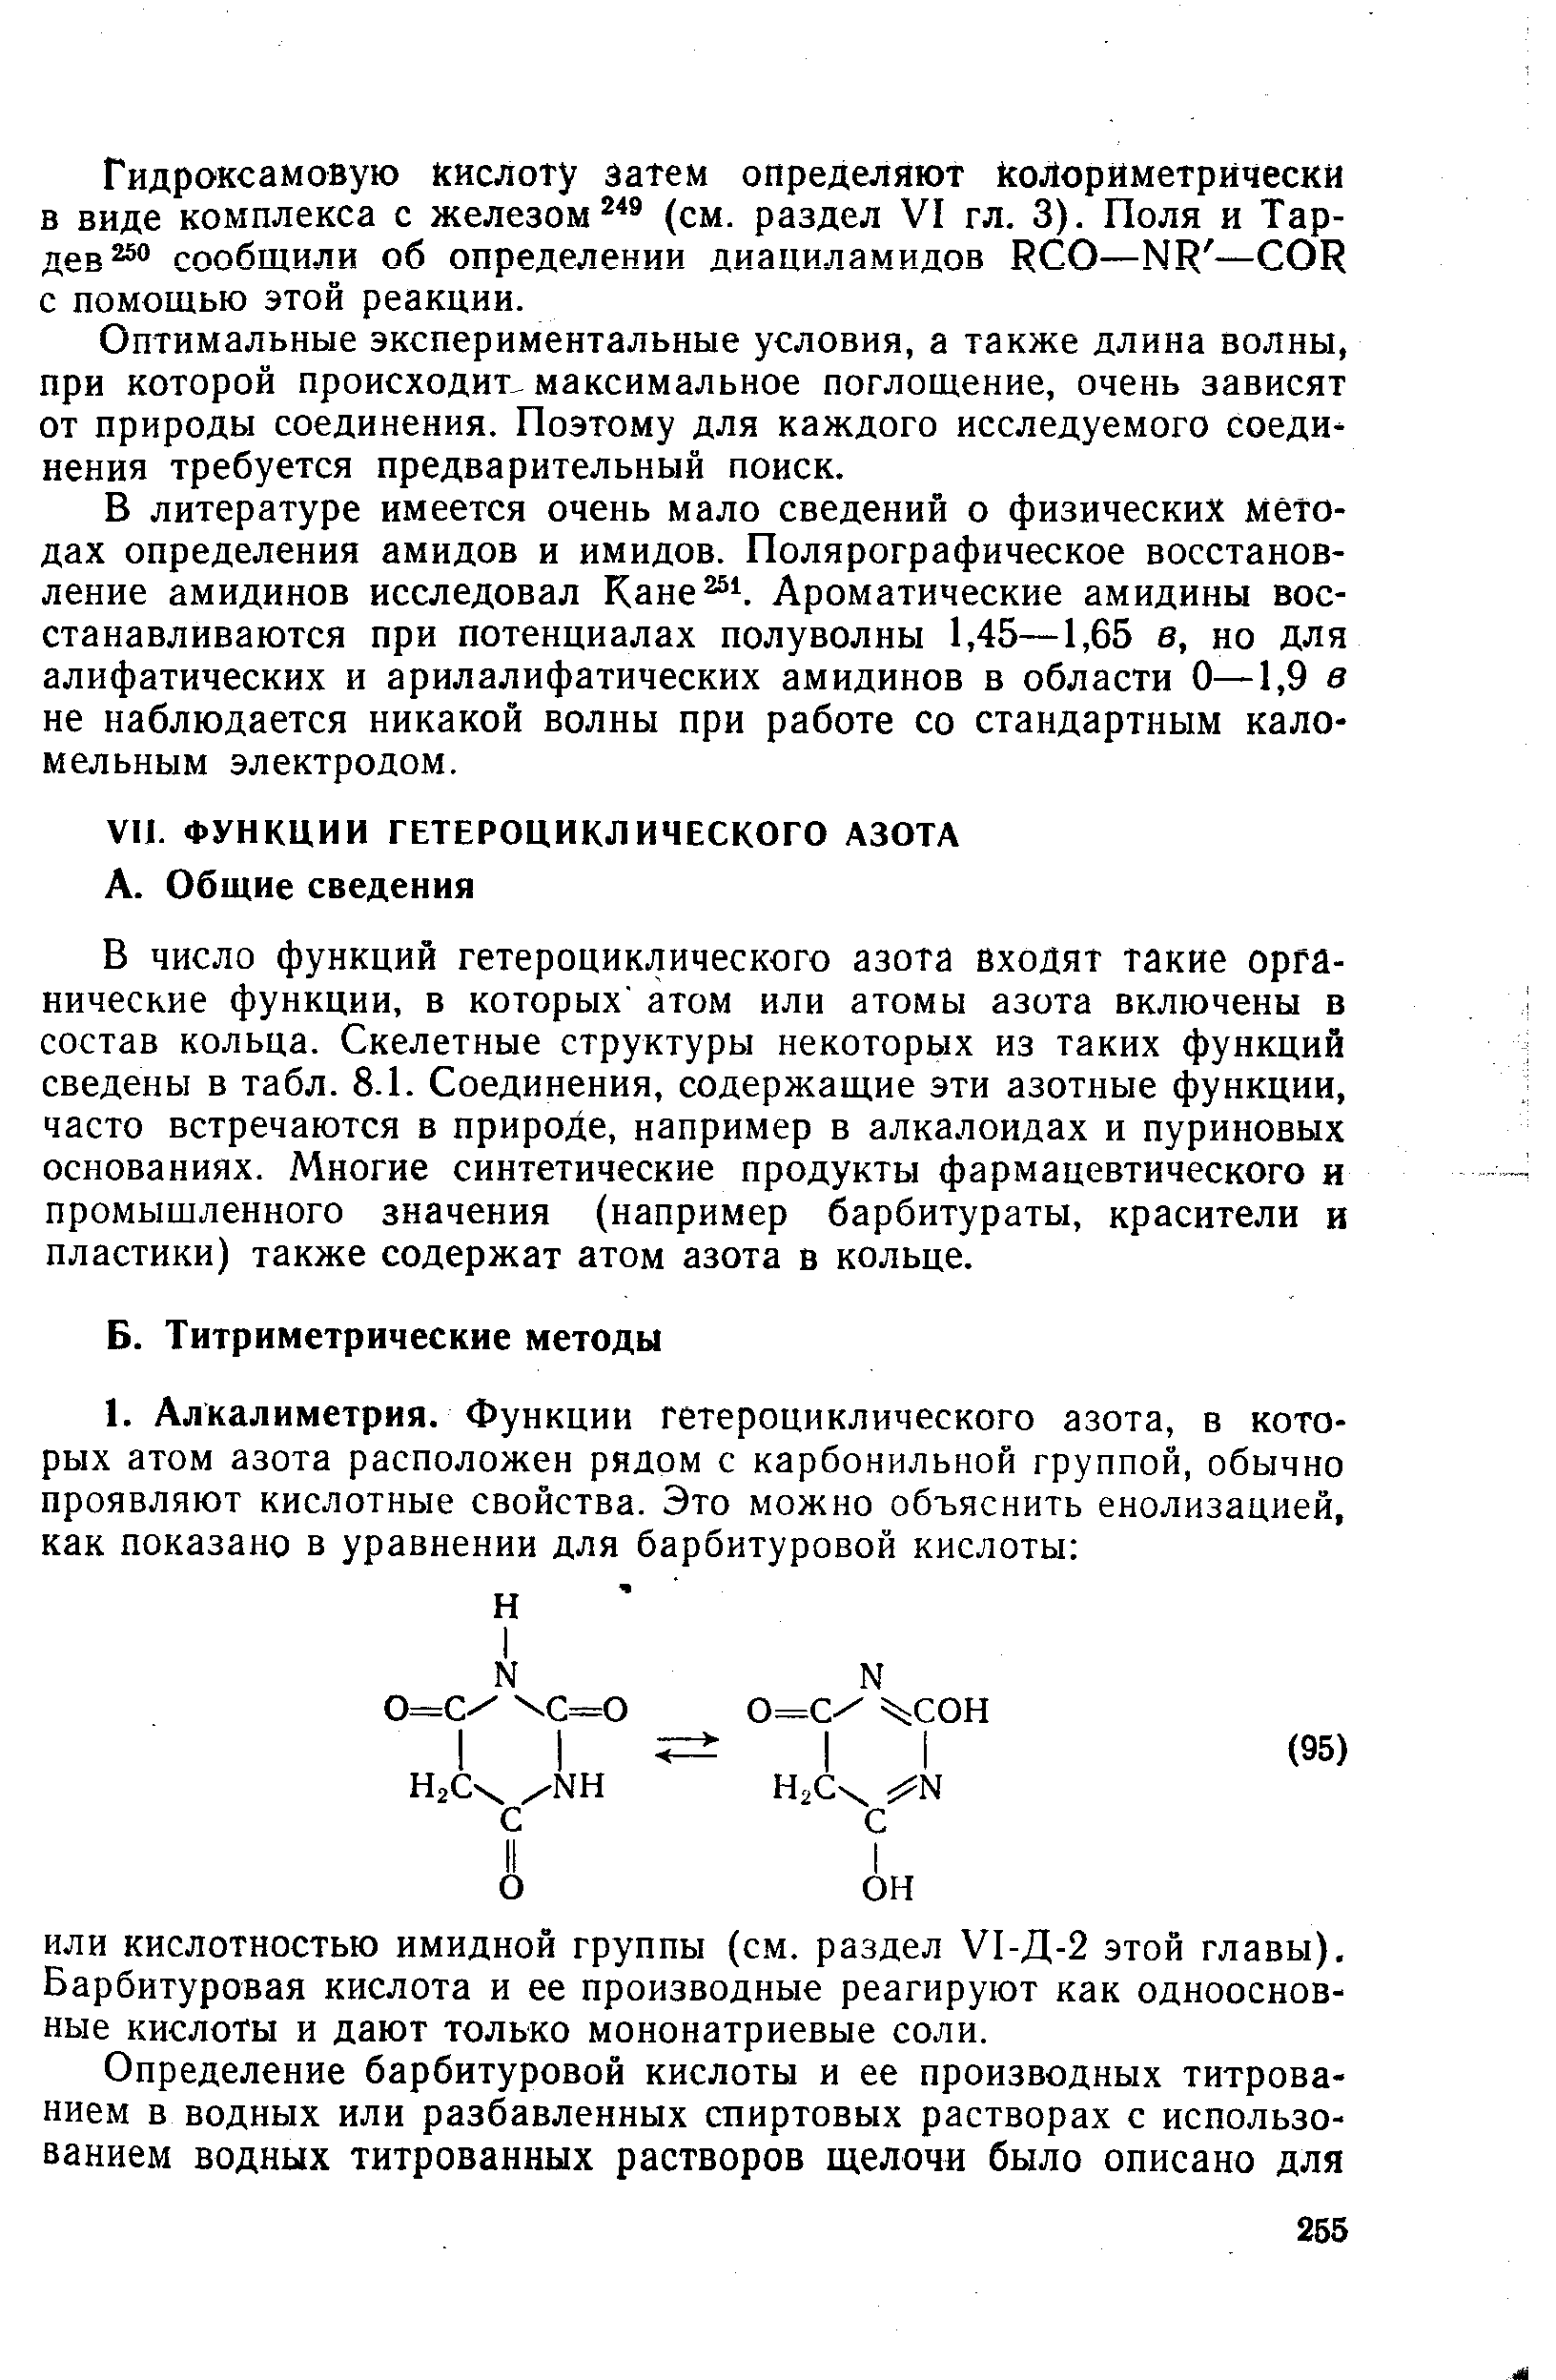 Гидроксамовую кислоту затем определяют колориметрически в виде комплекса с железом (см. раздел VI гл. 3). Поля и Тар-дев25о сообщили об определении диациламидов R O—NR — OR с помощью этой реакции.